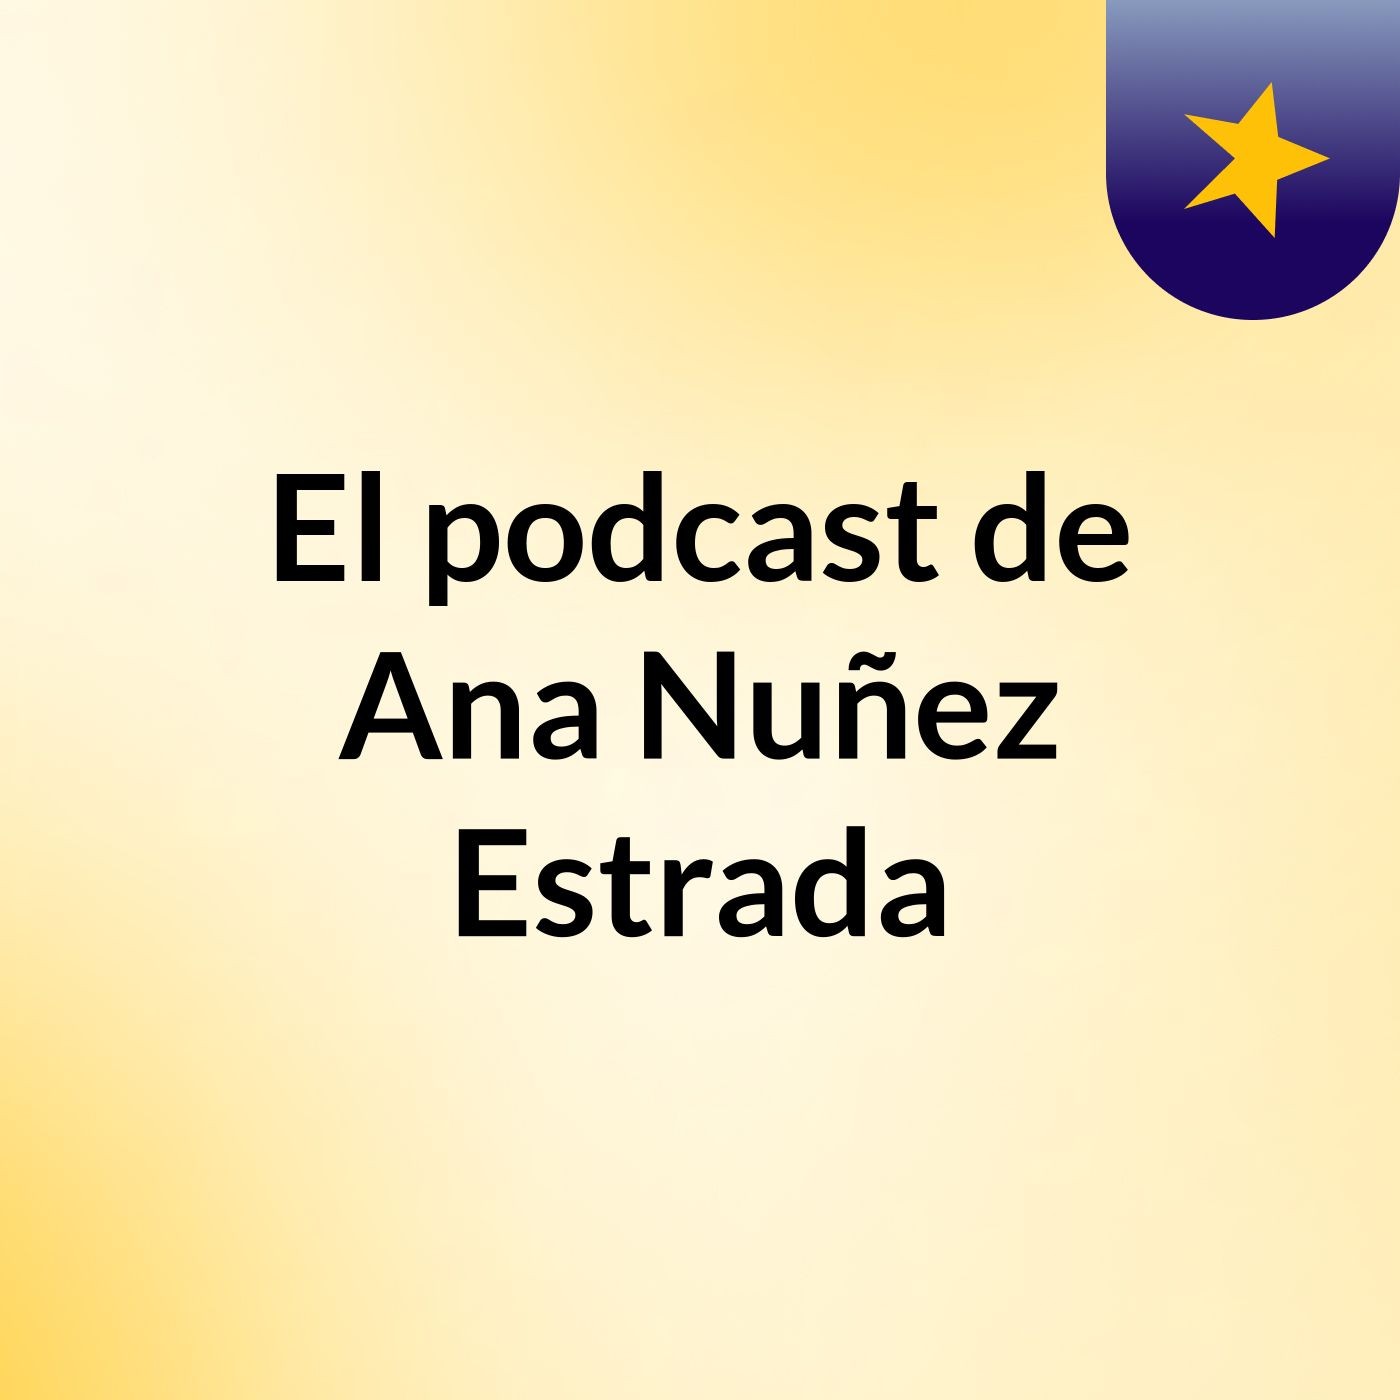 El podcast de Ana Nuñez Estrada